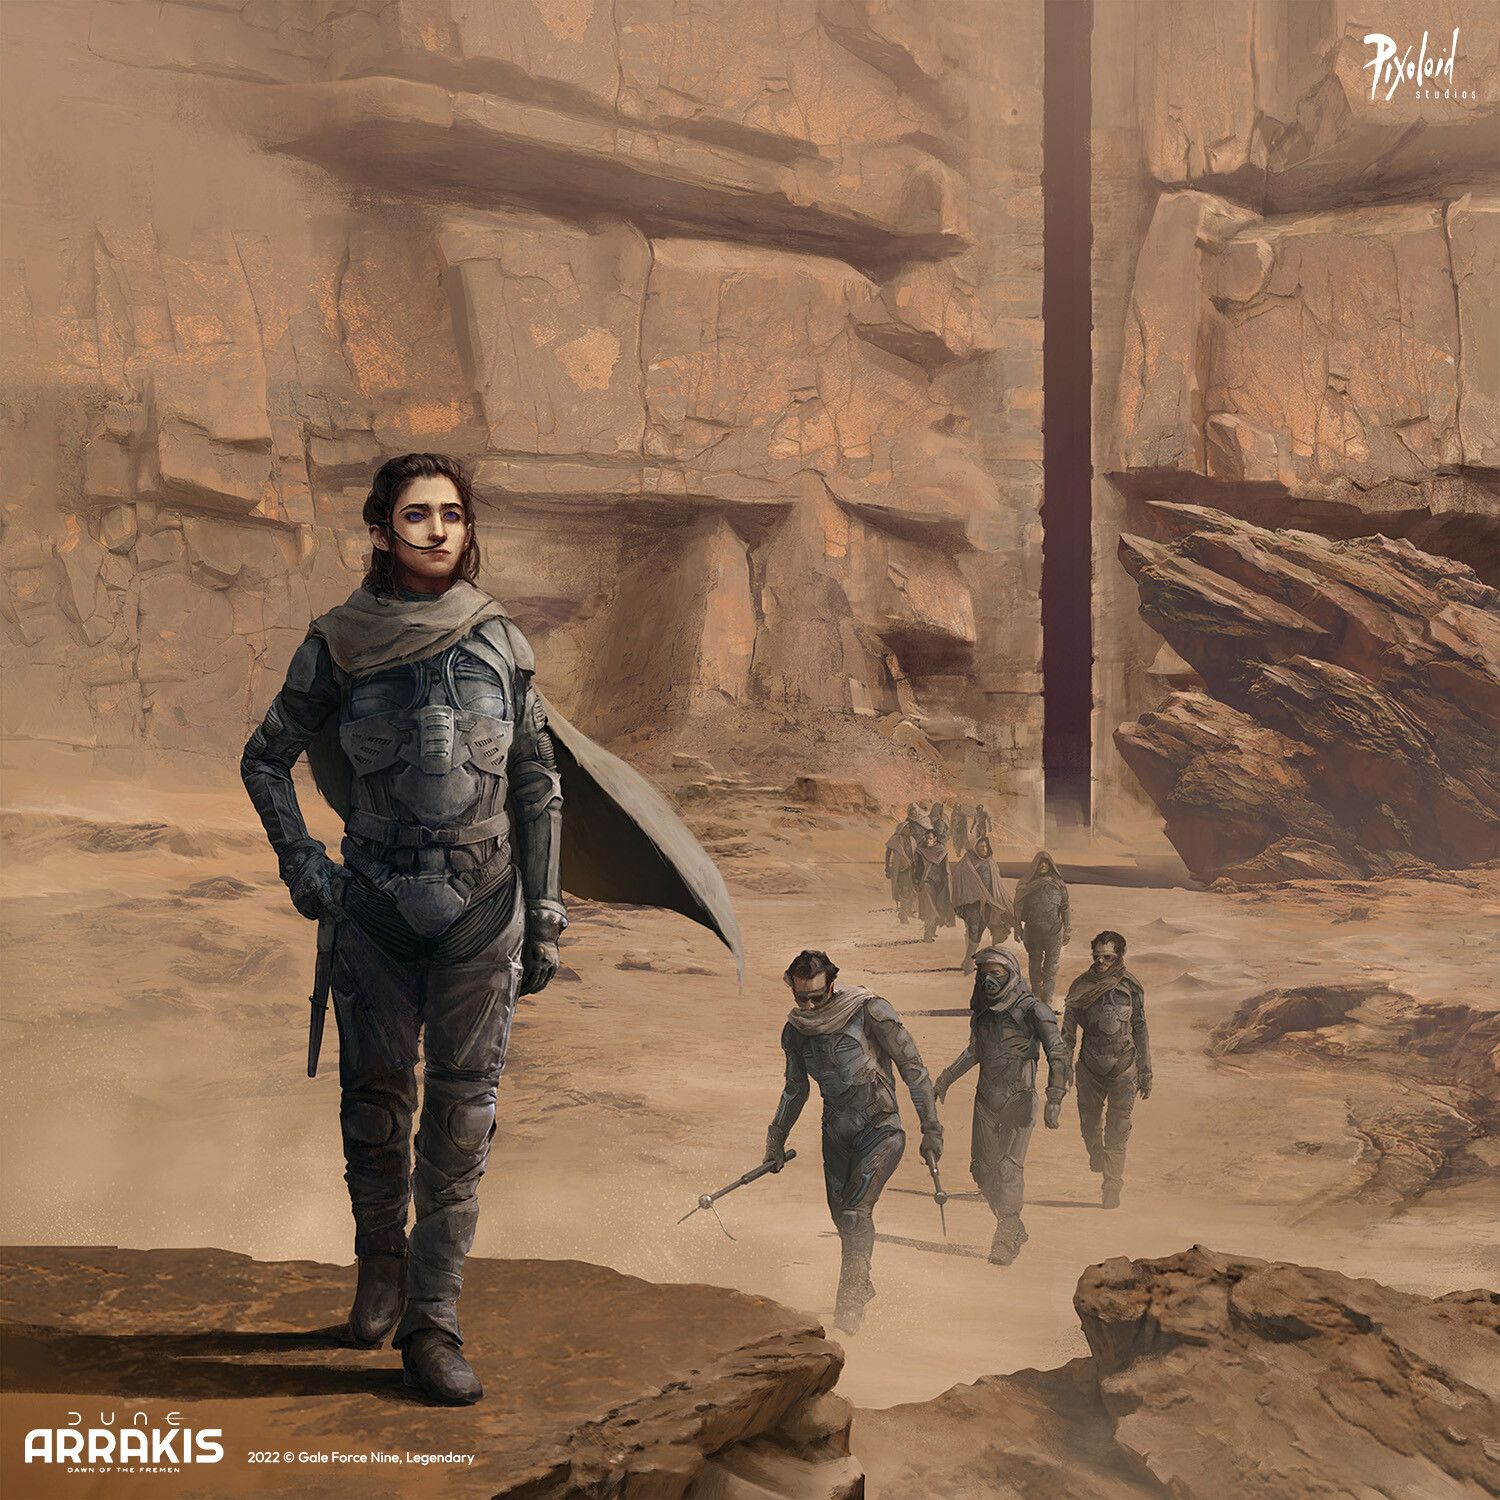 Pixoloid Studios - Dune Arrakis: Dawn of the Fremen - Cover